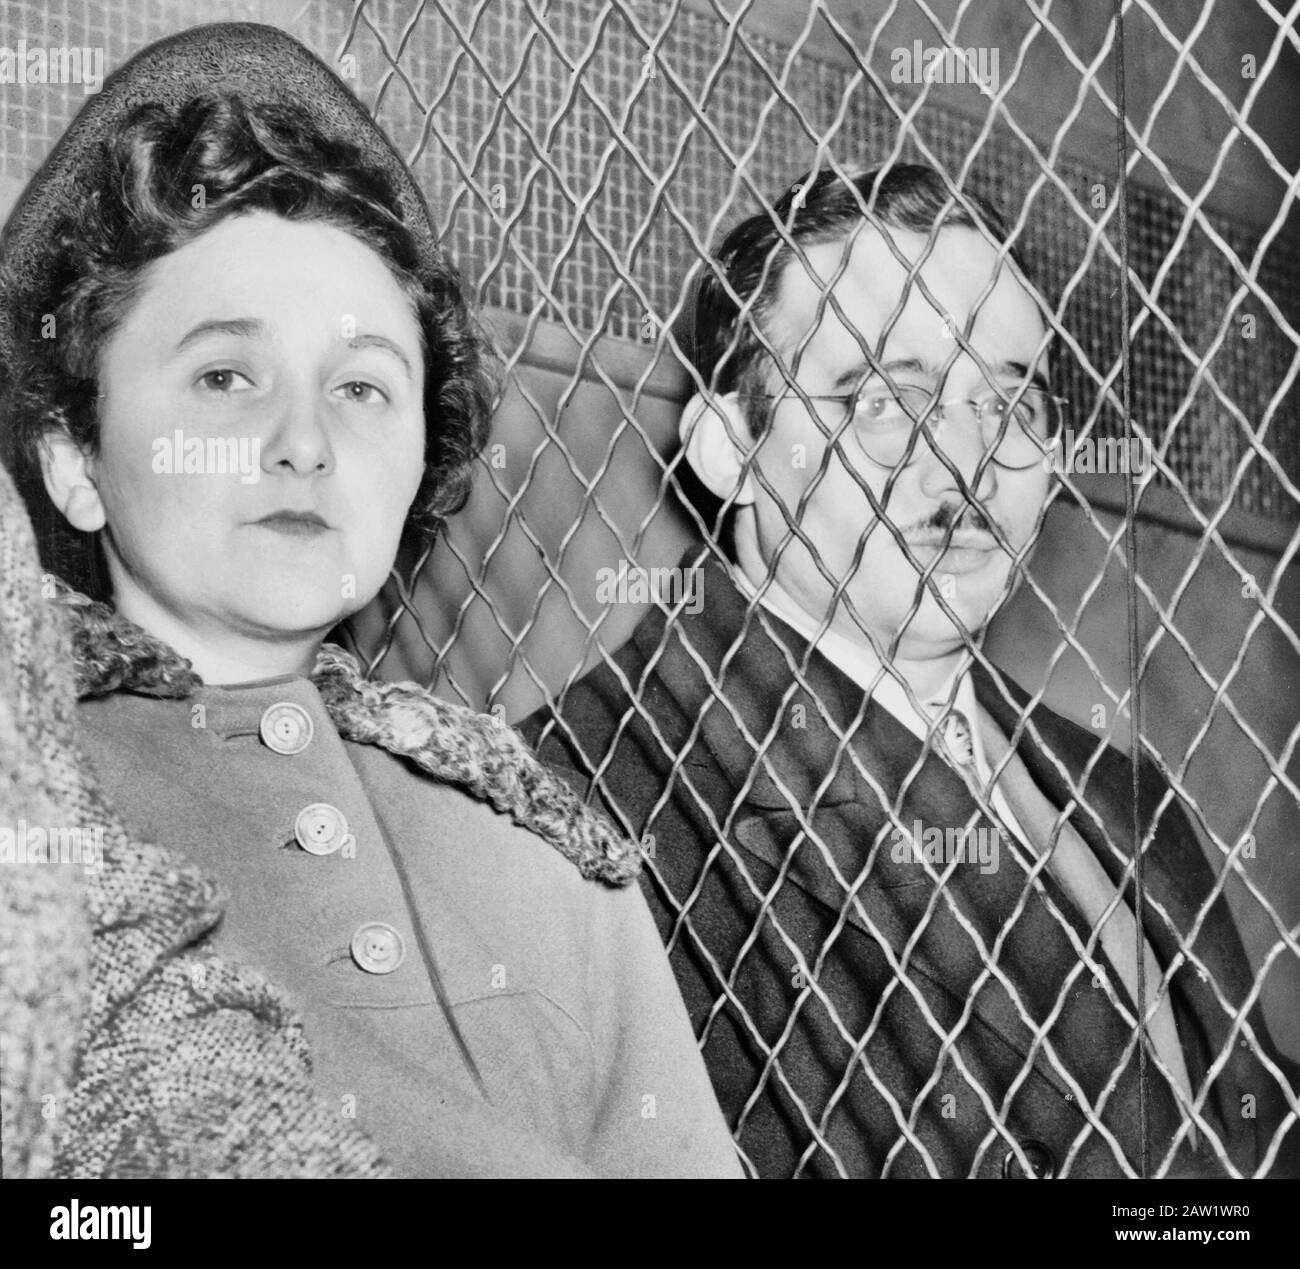 Julius et Ethel Rosenberg, séparés par un écran à fils lourds lorsqu'ils quittent la U.S. court House après avoir été jugés coupables par jury. 1951 Banque D'Images